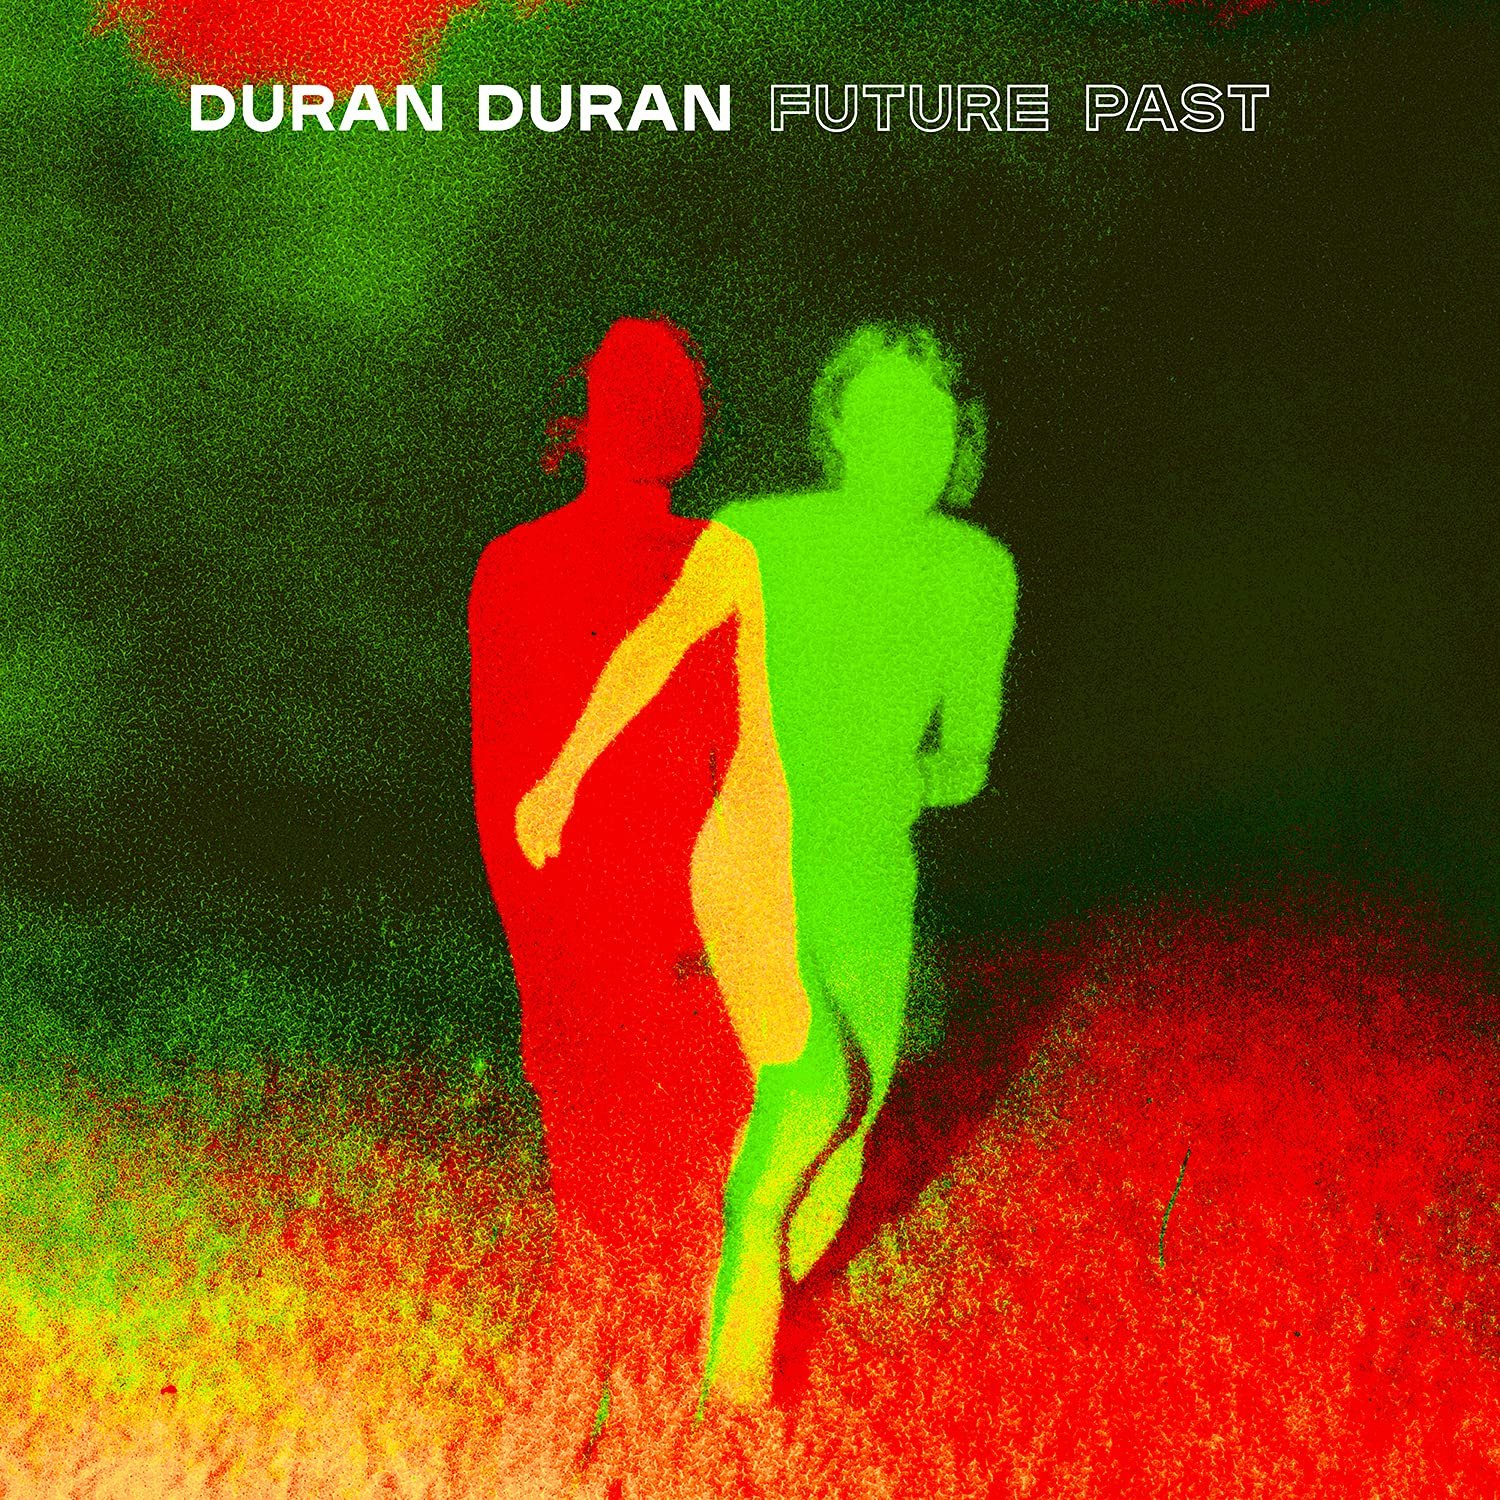 DuranDuran_FuturePast.jpg